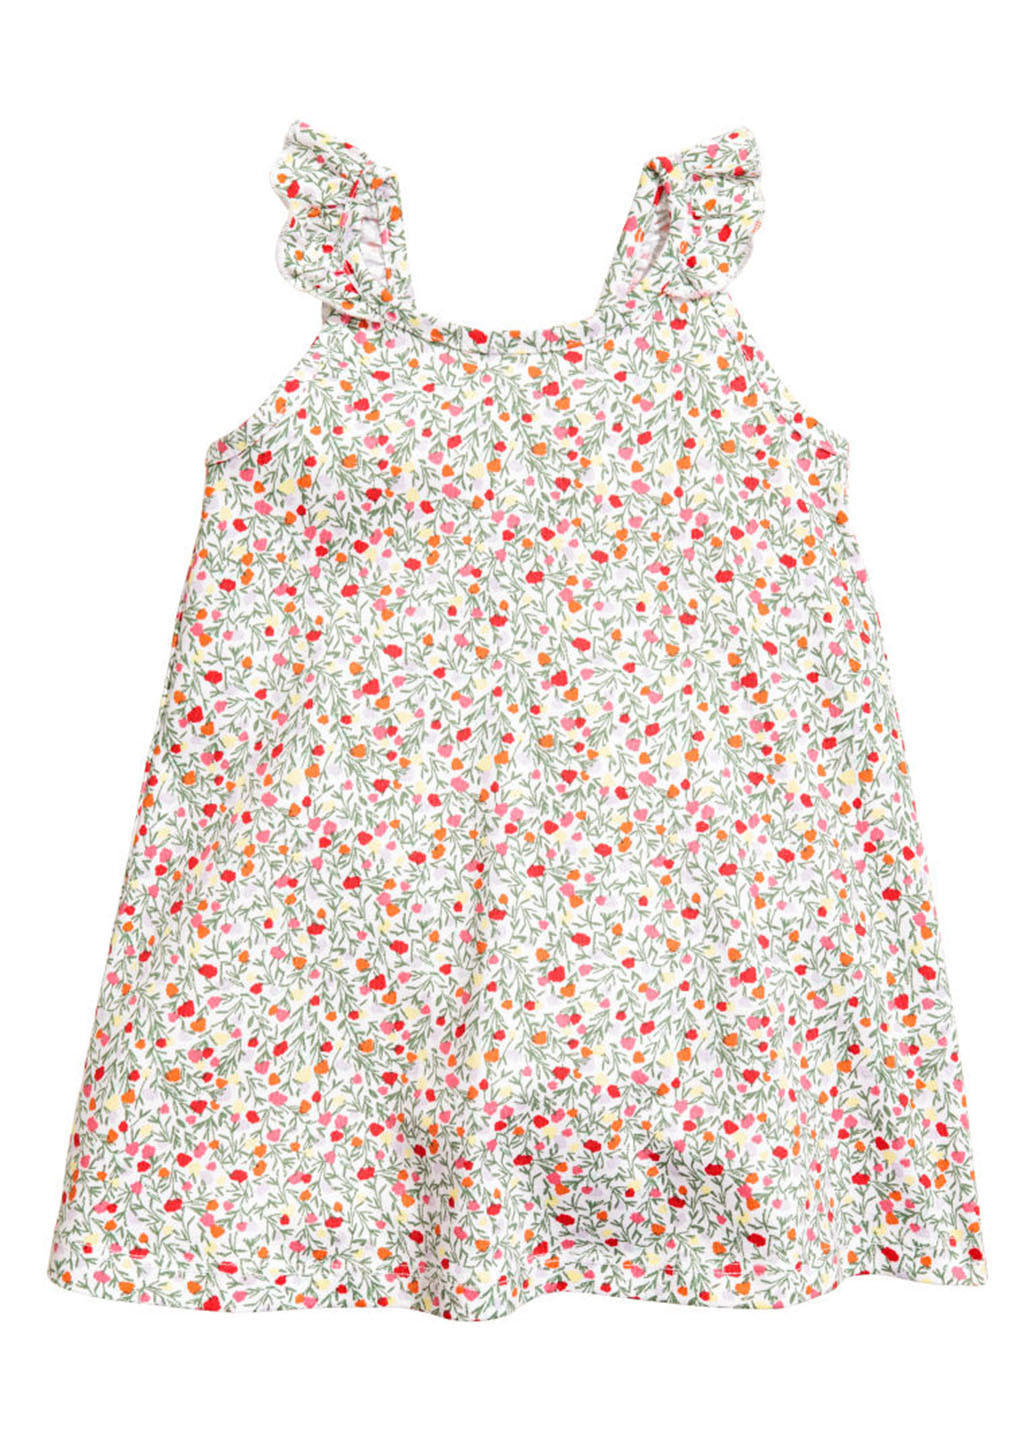 Комбинированная цветочной расцветки блузка H&M летняя